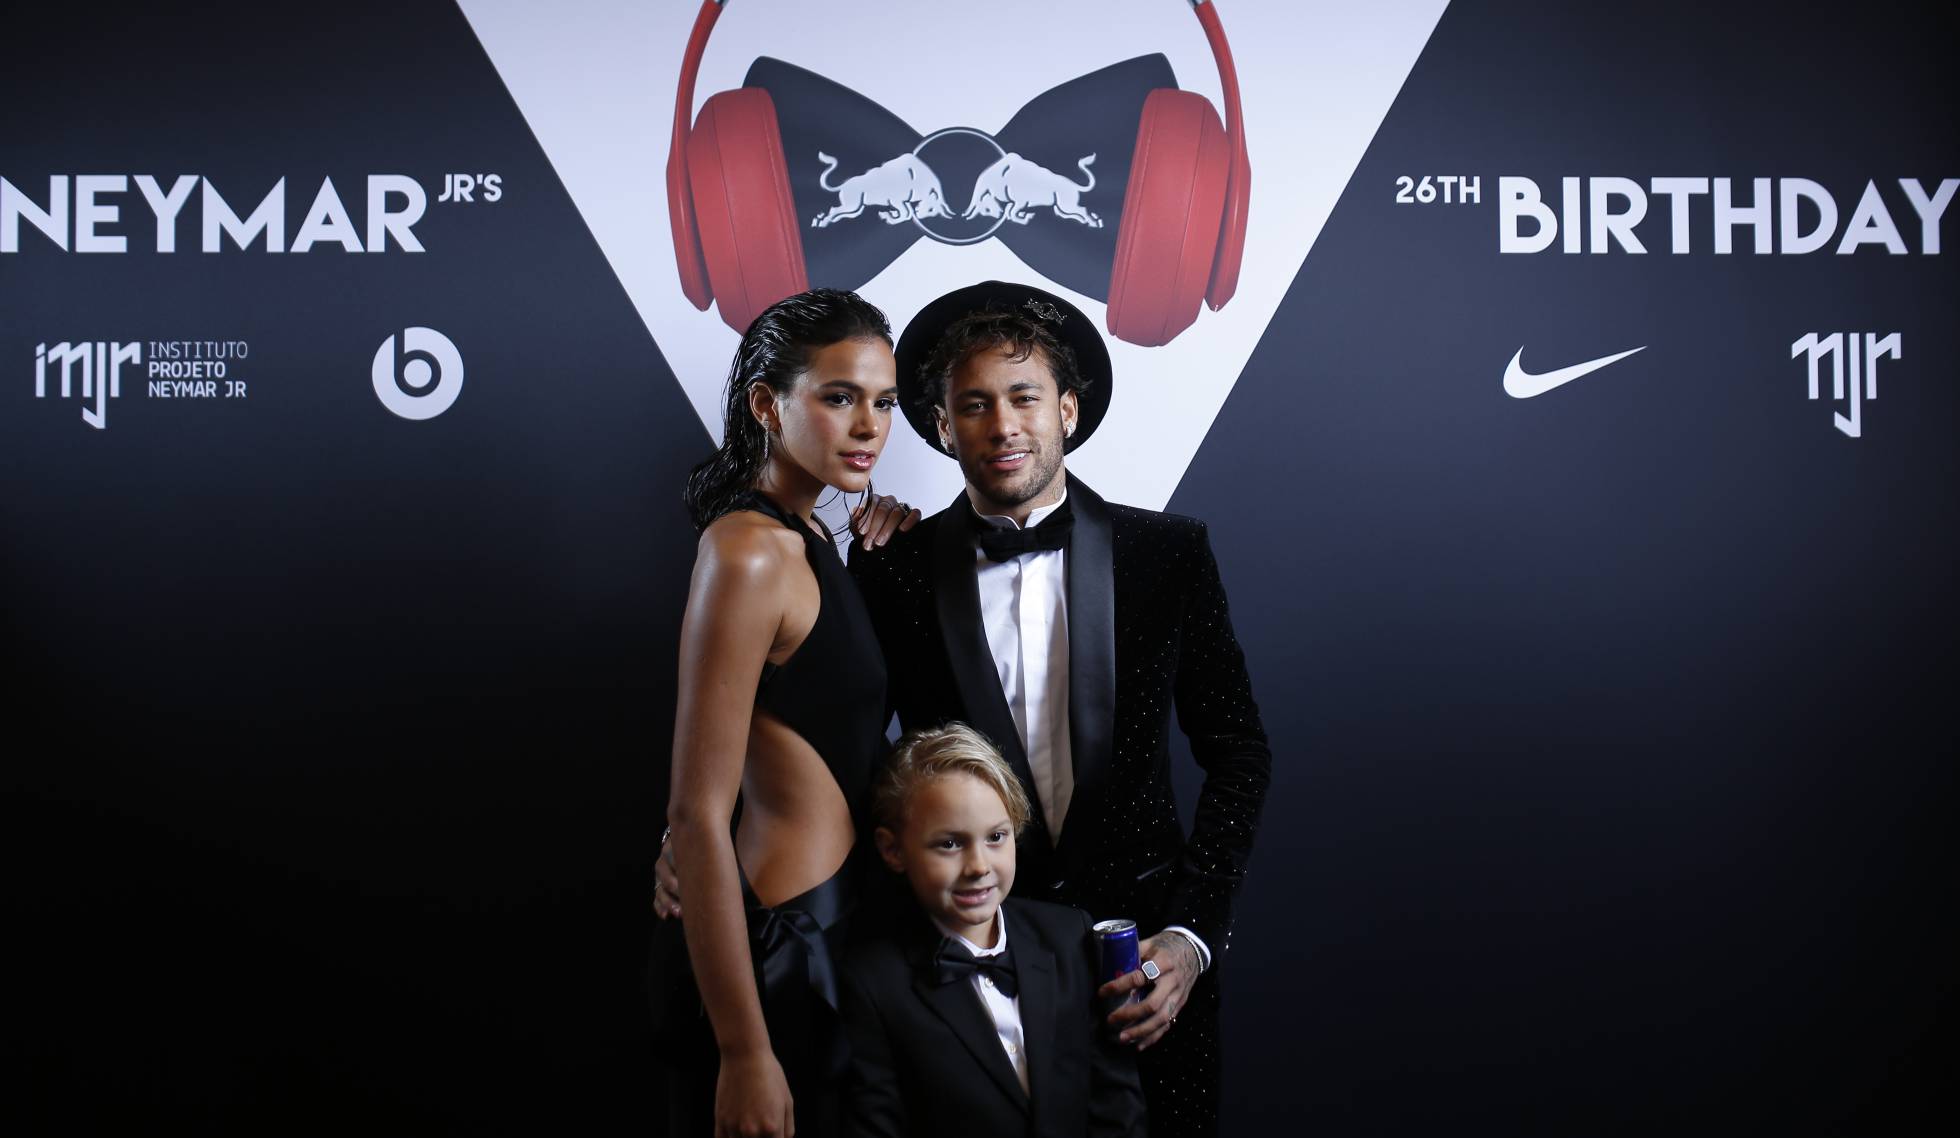 Neymar perseguido por la polémica ¡hasta por su fiesta de cumpleaños!